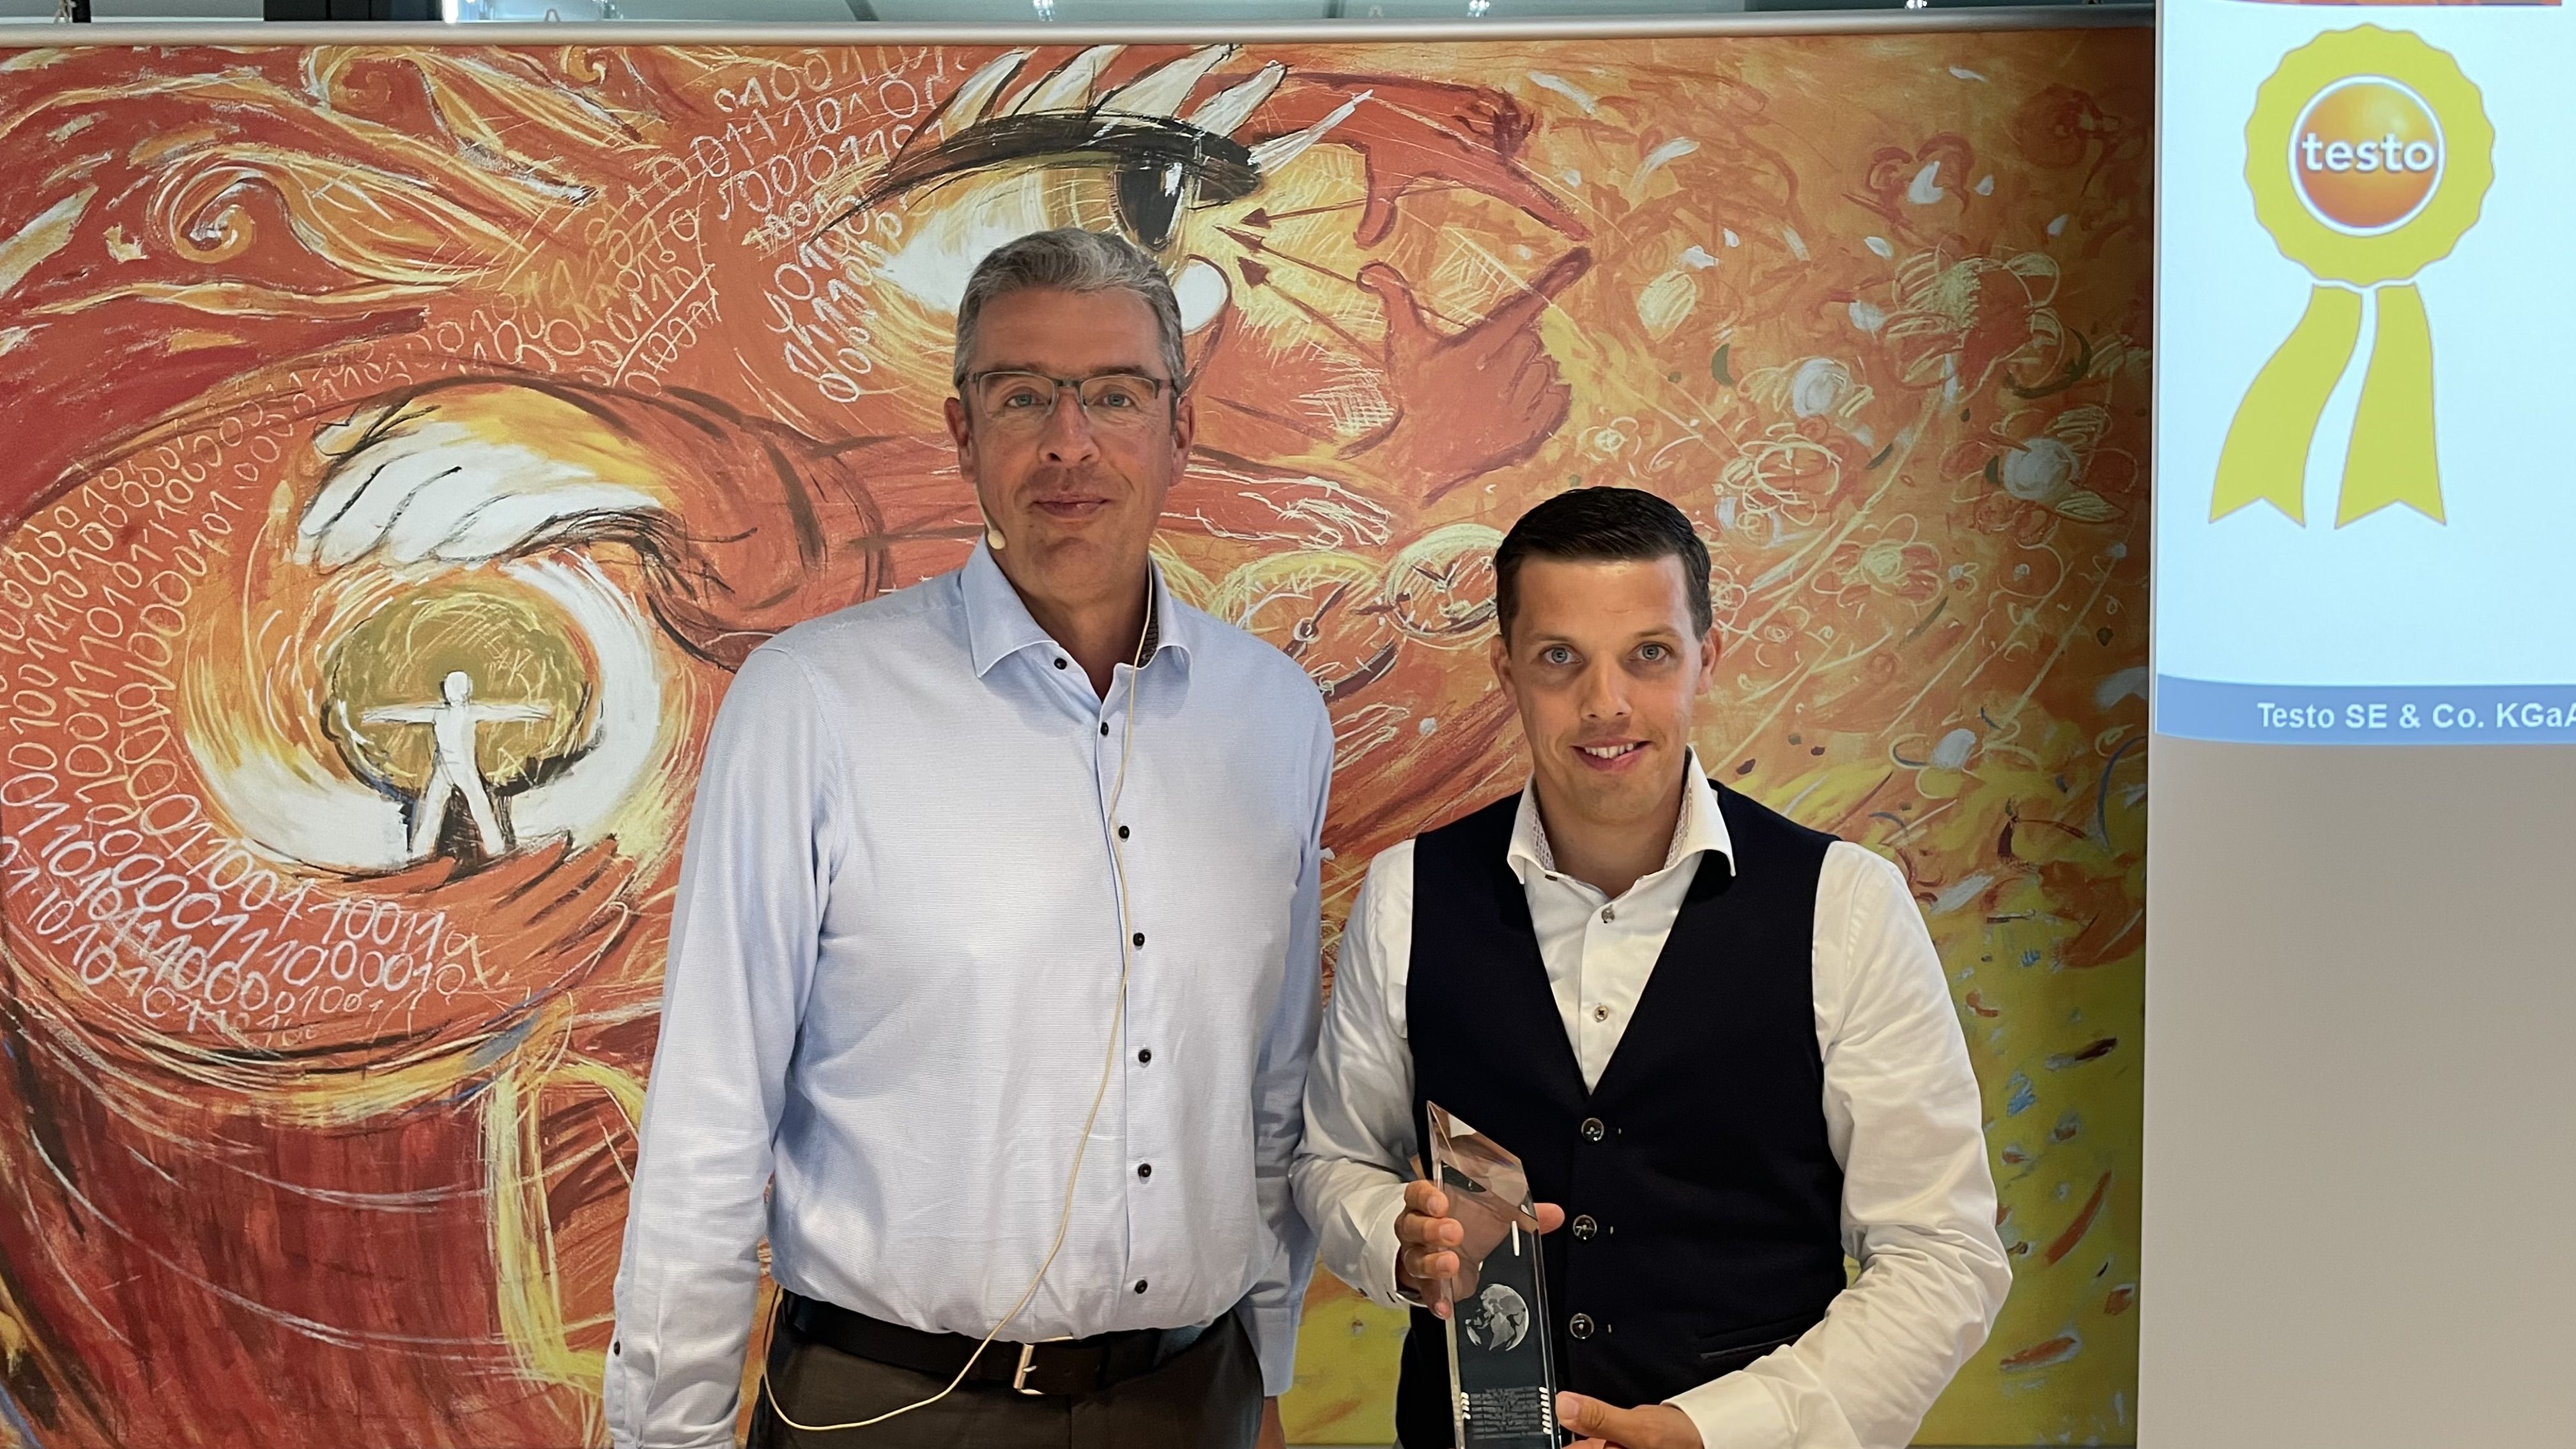 Jeroen Van Der Kelen, CEO de Testo Belgique, reçoit le prix 'Entreprise de l'année' de Burkart Knospe, CEO du groupe Testo.